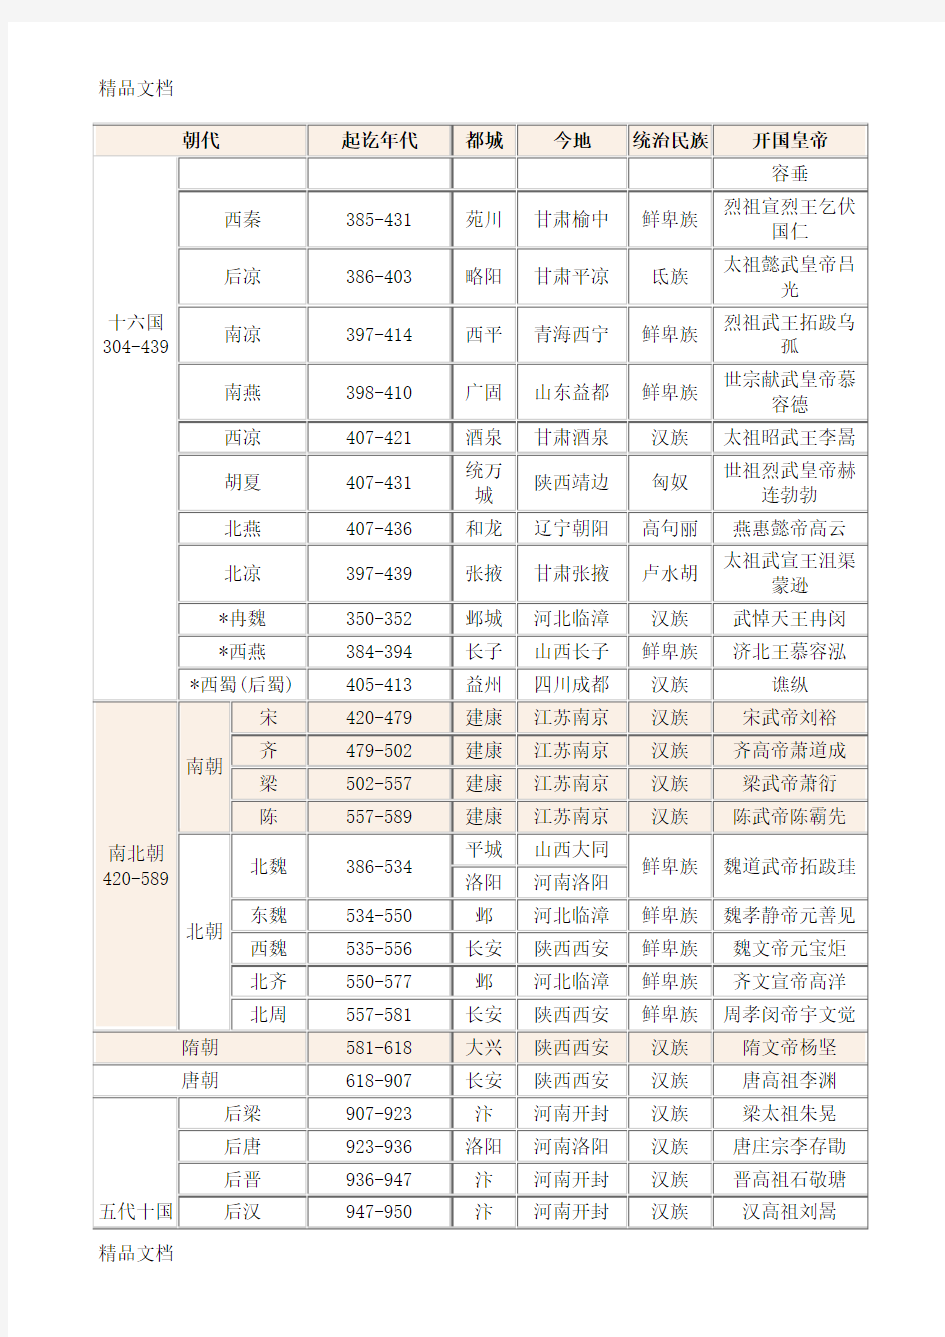 中国历史朝代顺序表、年表(完整版)教学内容